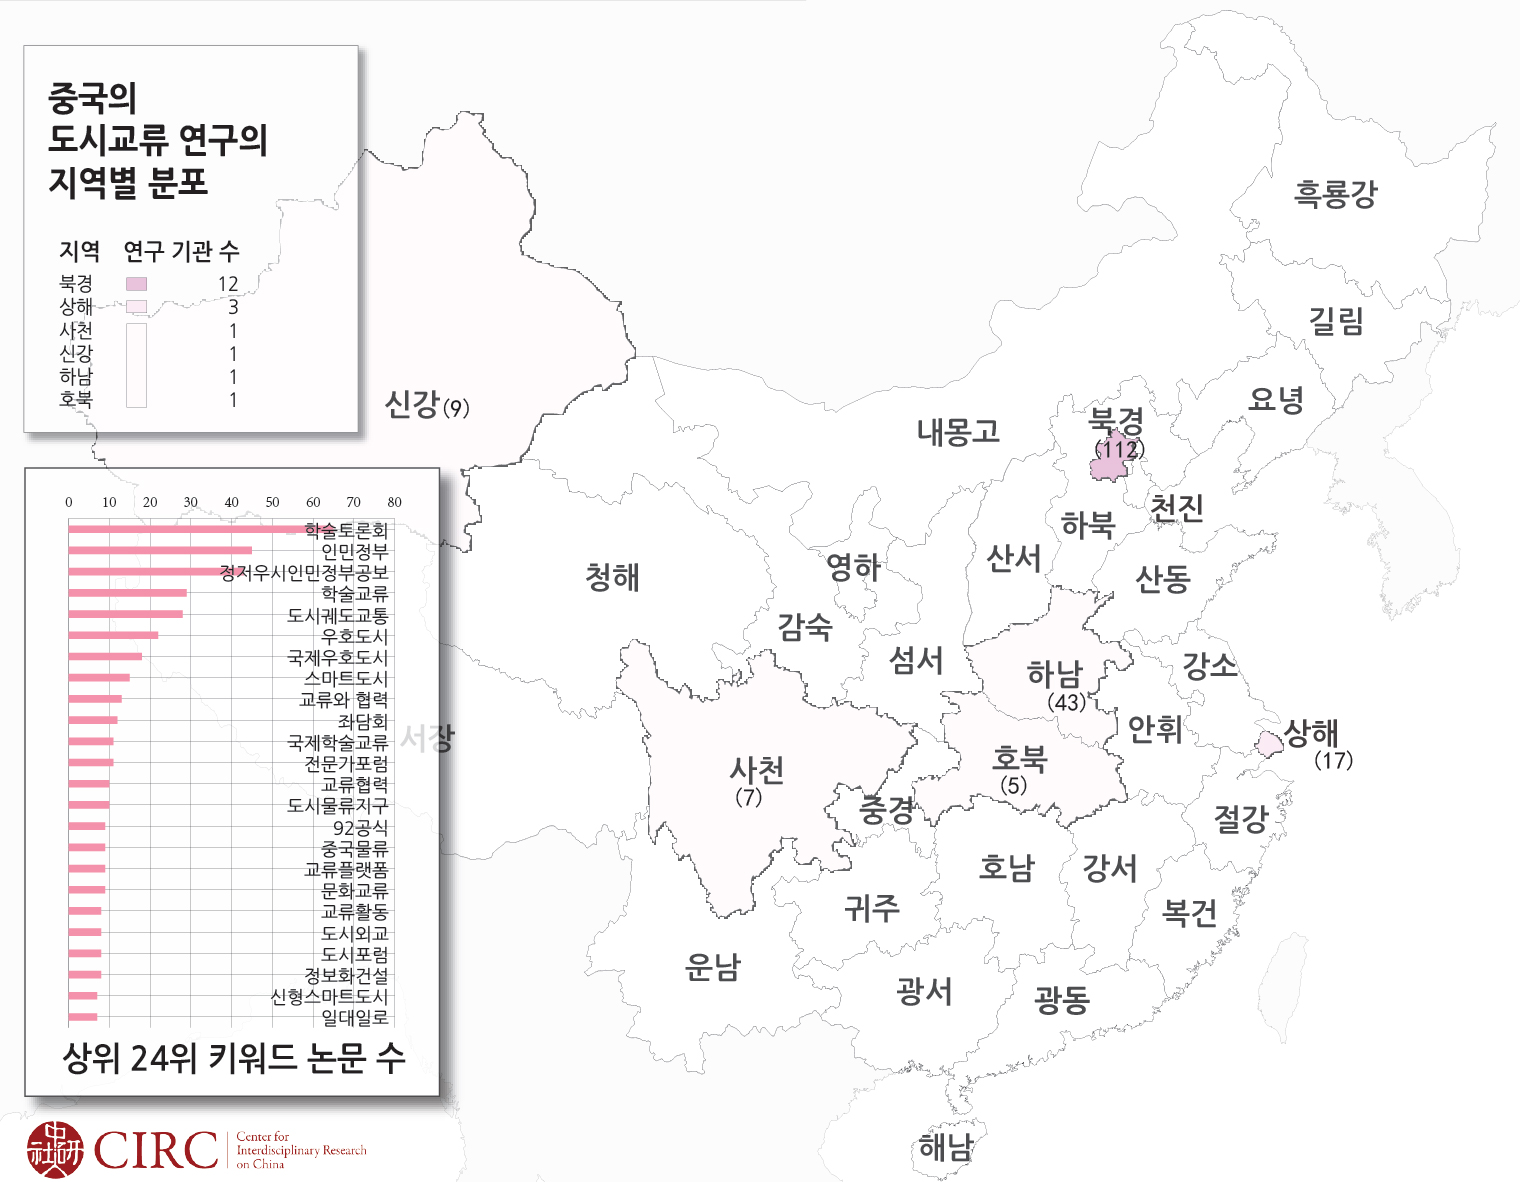 407_국정운영_이광수_중국의-도시교류-연구의-지역별--분포.jpg